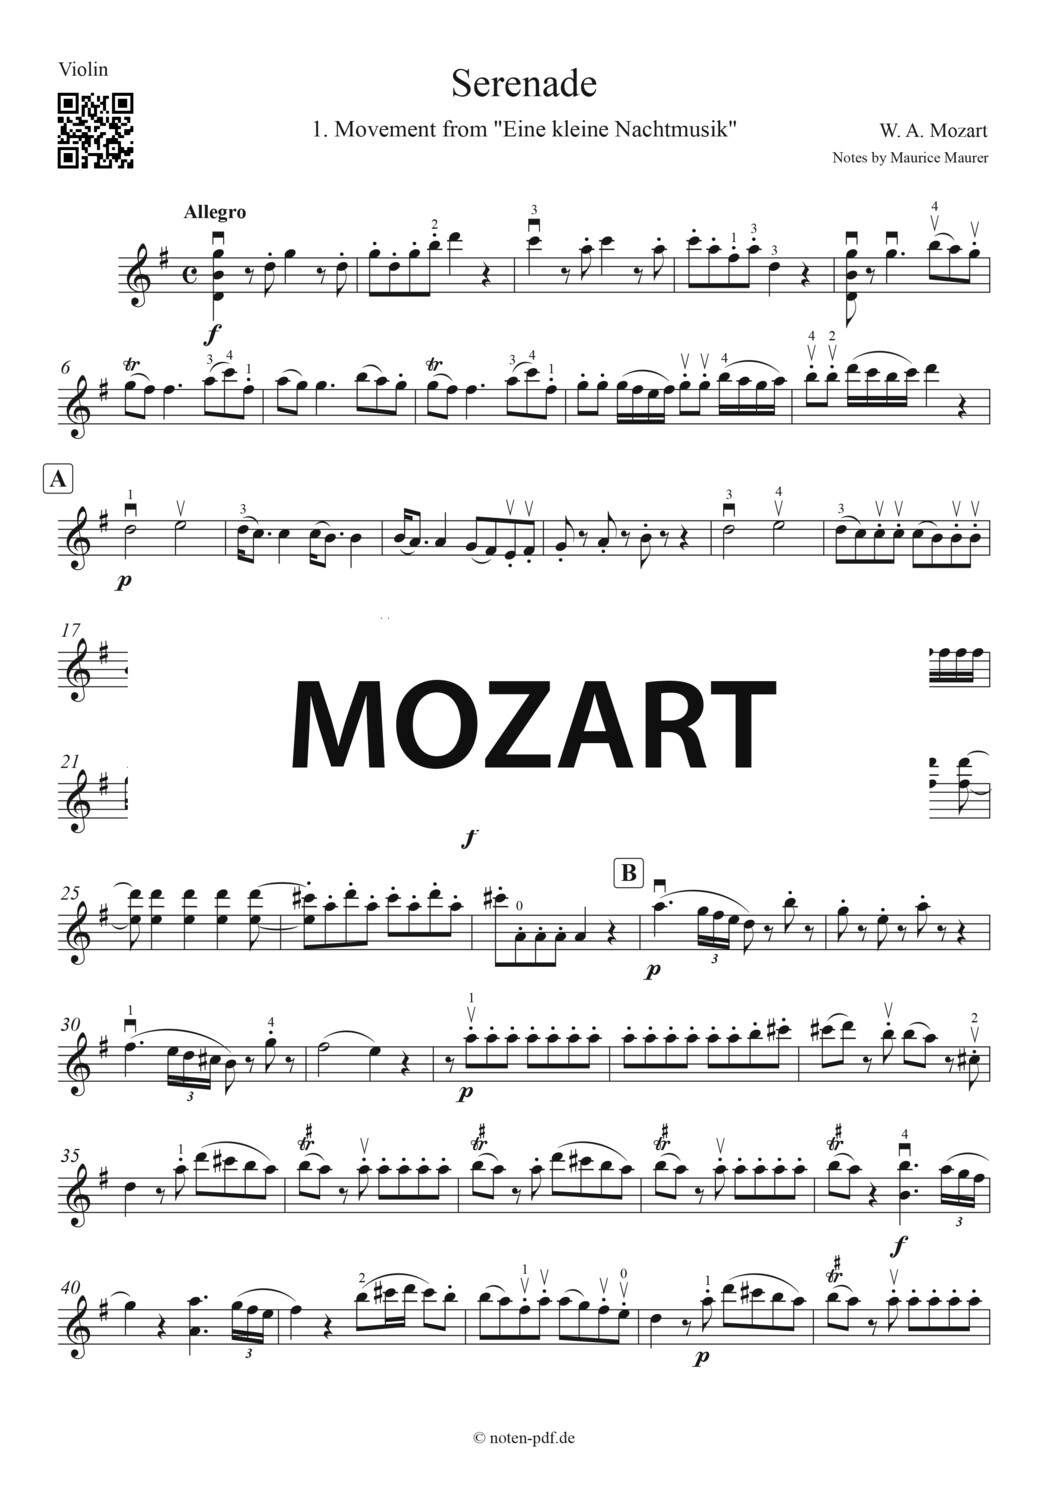 Mozart: Serenade from "Eine kleine Nachtmusik" (Violin Sheet Music)